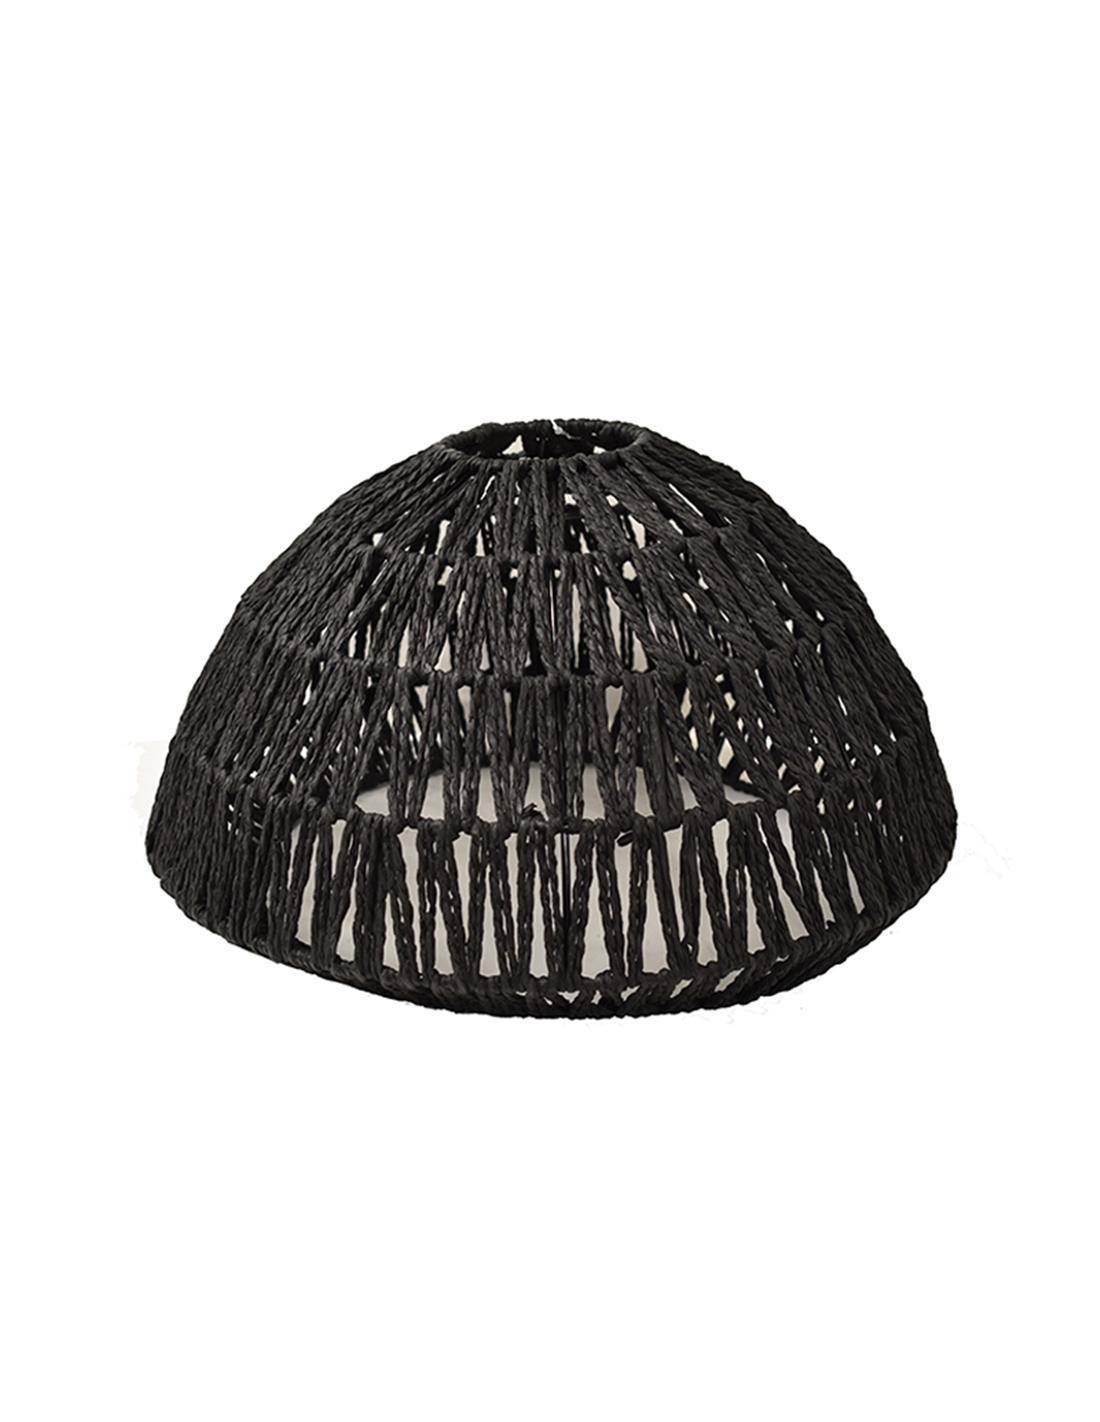 Φωτιστικό καπέλο οροφής τεχνητή raffia μαύρο χρώμα 41Χ24